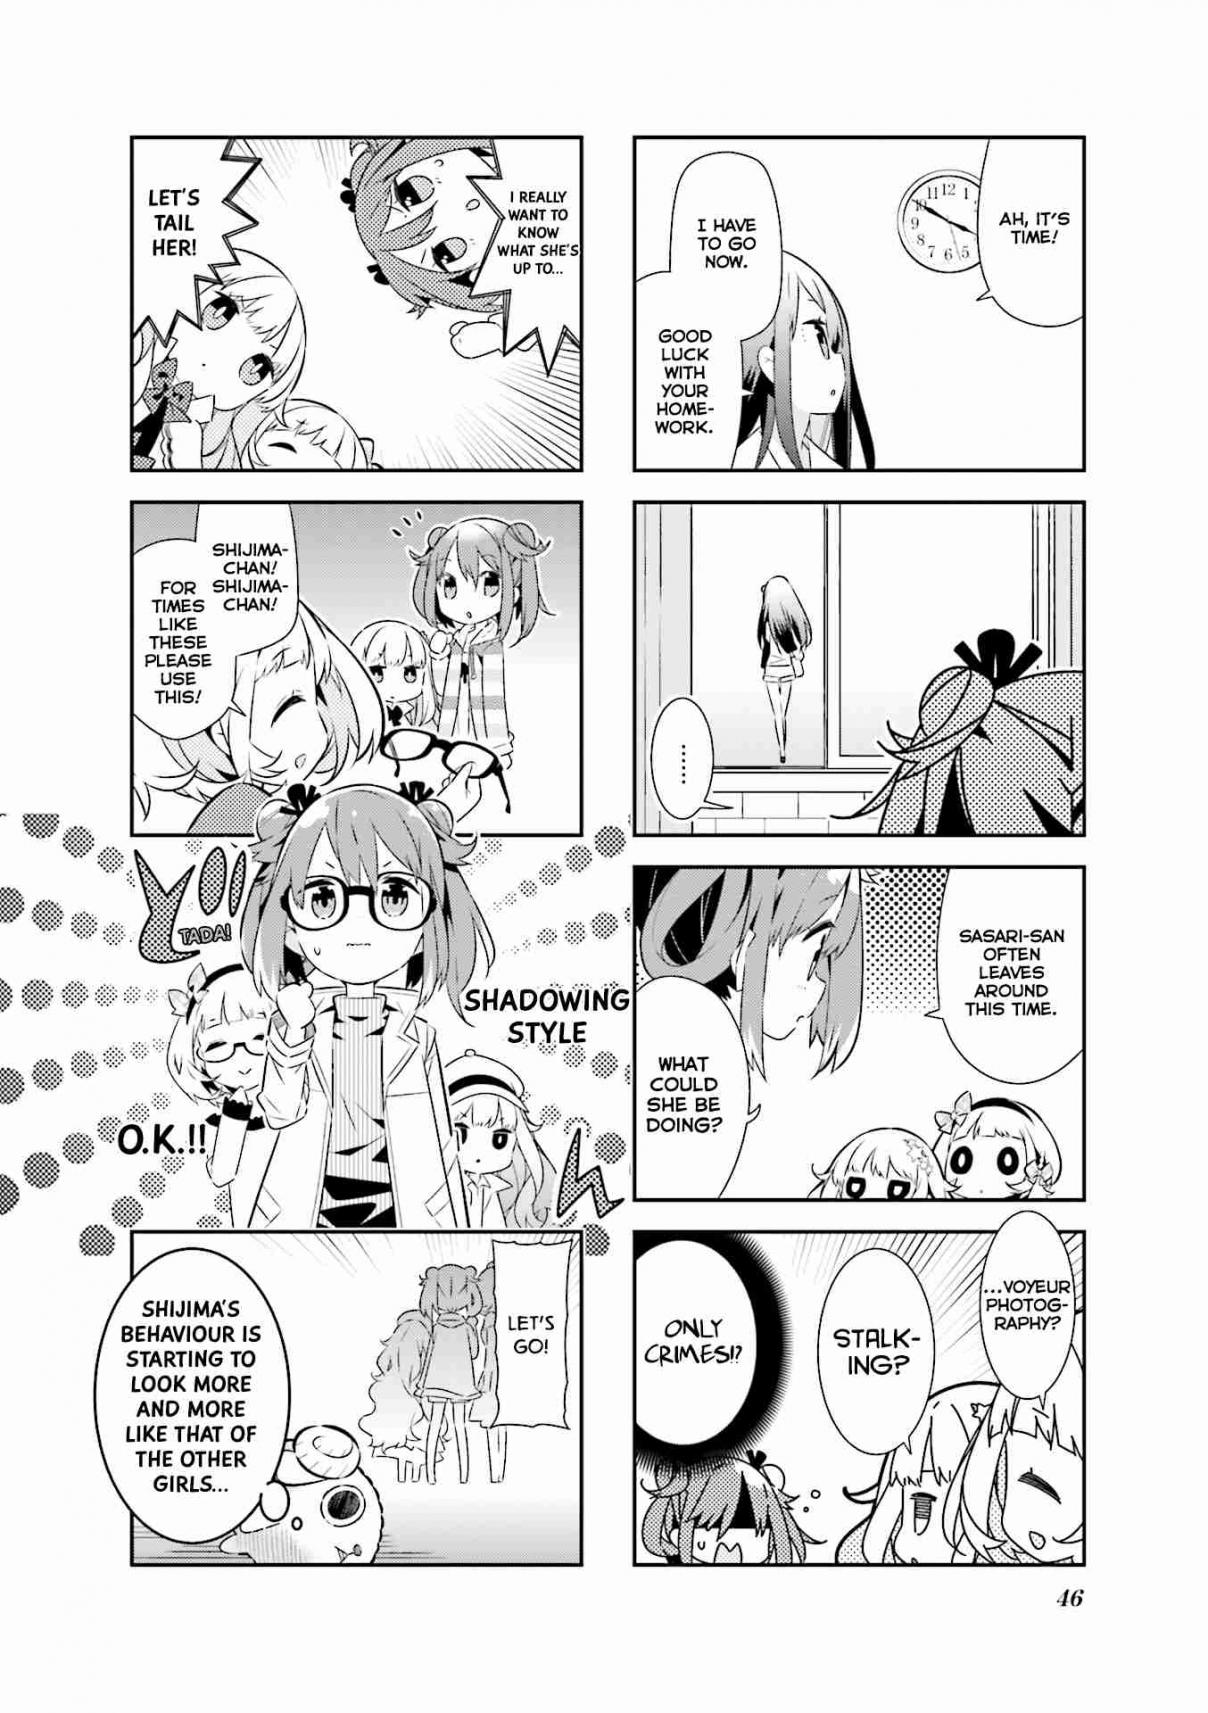 Mahou Shoujo no Kareinaru Yosei Vol. 1 Ch. 5 Exposed! Sasari's Secret